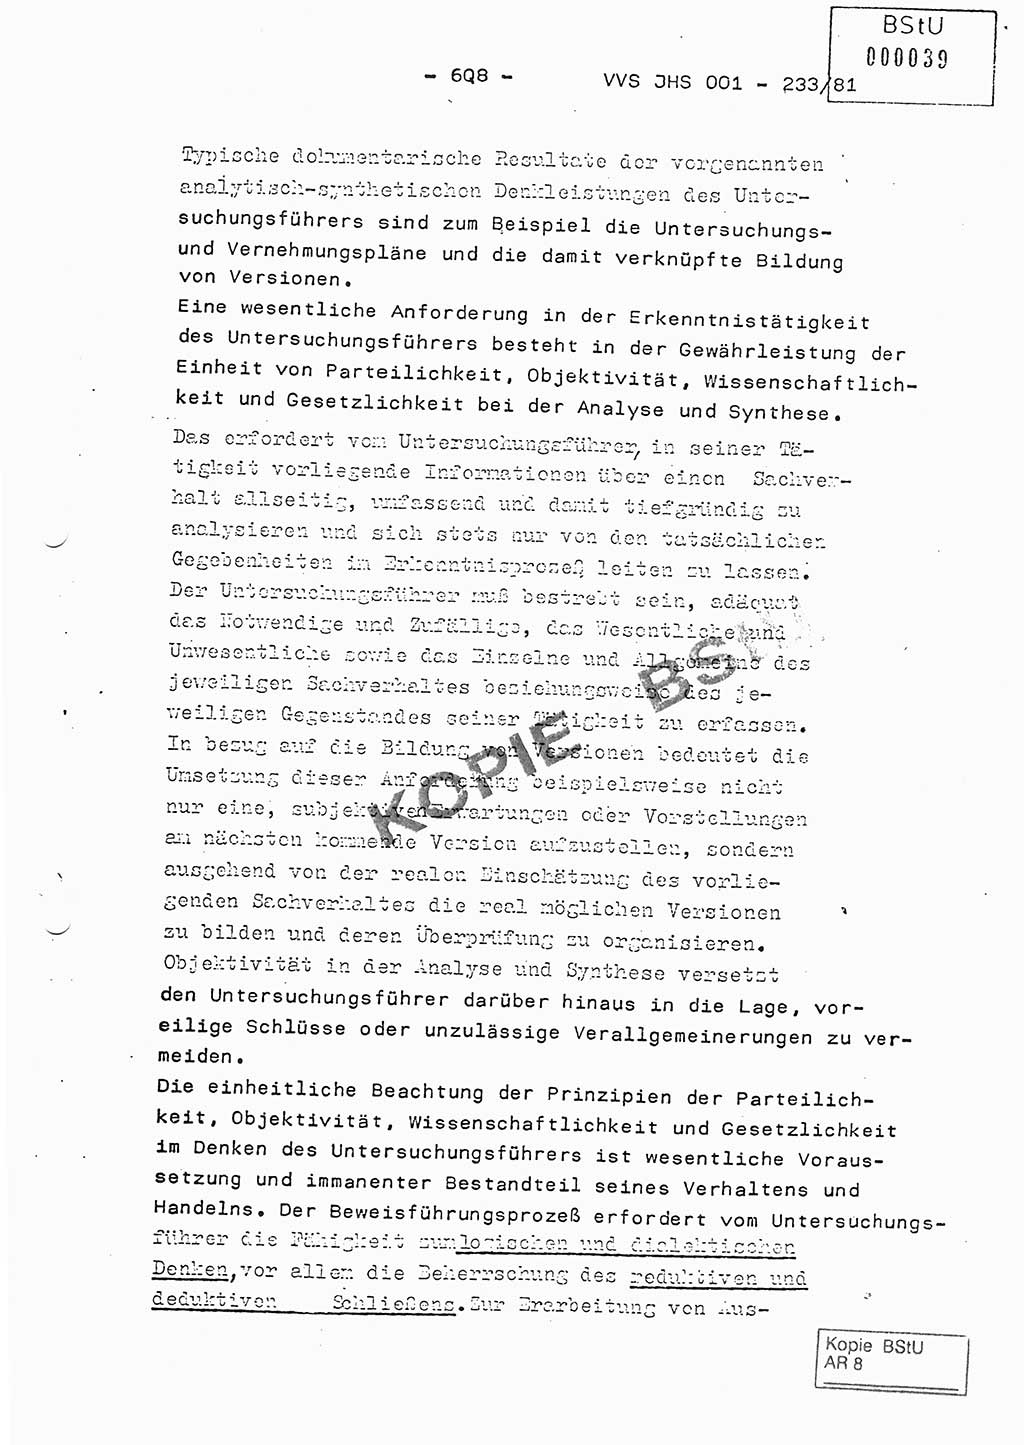 Dissertation Oberstleutnant Horst Zank (JHS), Oberstleutnant Dr. Karl-Heinz Knoblauch (JHS), Oberstleutnant Gustav-Adolf Kowalewski (HA Ⅸ), Oberstleutnant Wolfgang Plötner (HA Ⅸ), Ministerium für Staatssicherheit (MfS) [Deutsche Demokratische Republik (DDR)], Juristische Hochschule (JHS), Vertrauliche Verschlußsache (VVS) o001-233/81, Potsdam 1981, Blatt 608 (Diss. MfS DDR JHS VVS o001-233/81 1981, Bl. 608)